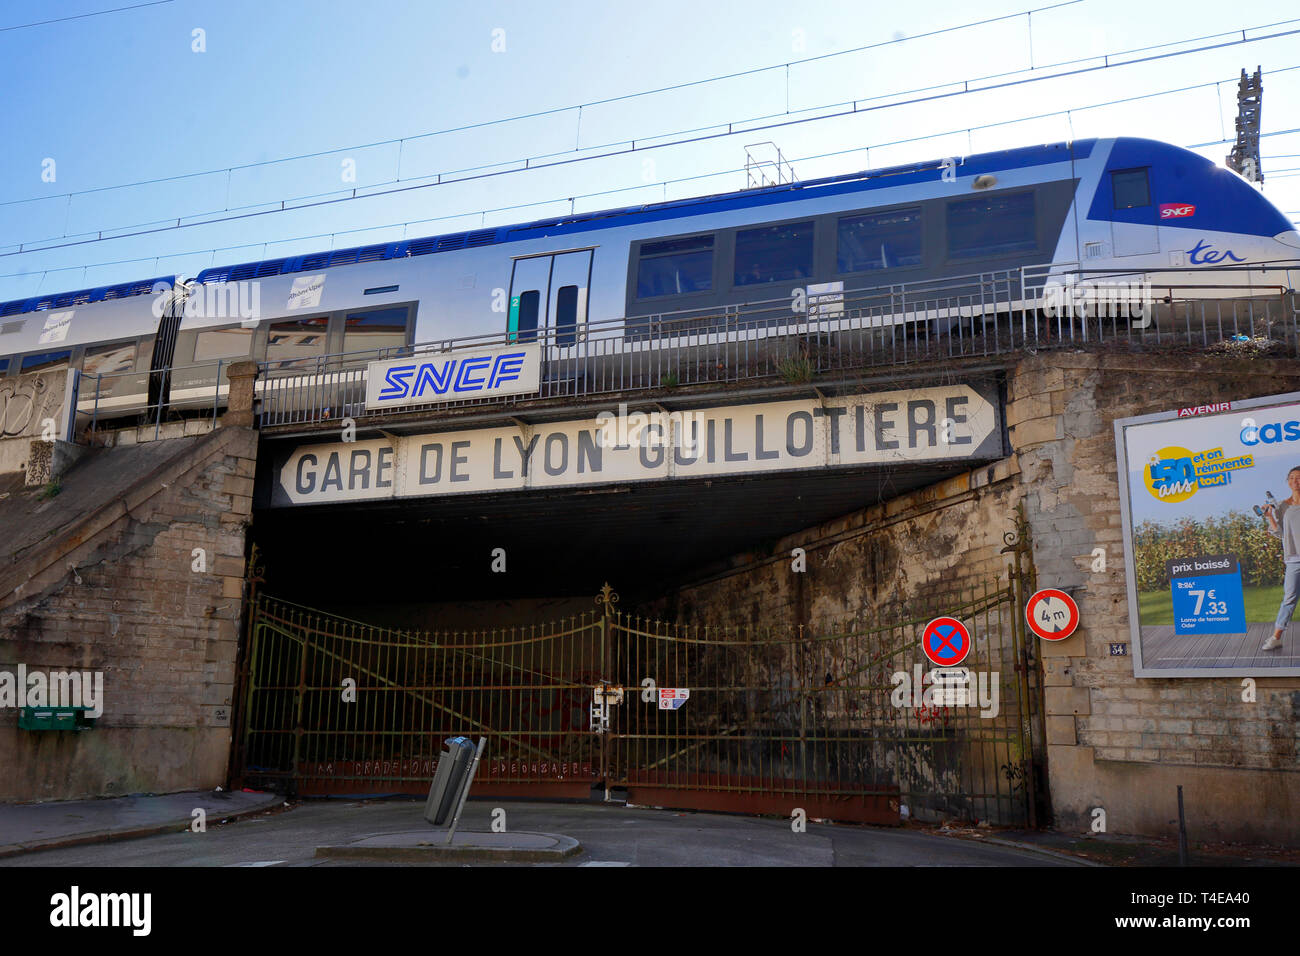 Un TER SNCF il treno si avvicina alla Gare de Lyon Guillotiere Foto Stock